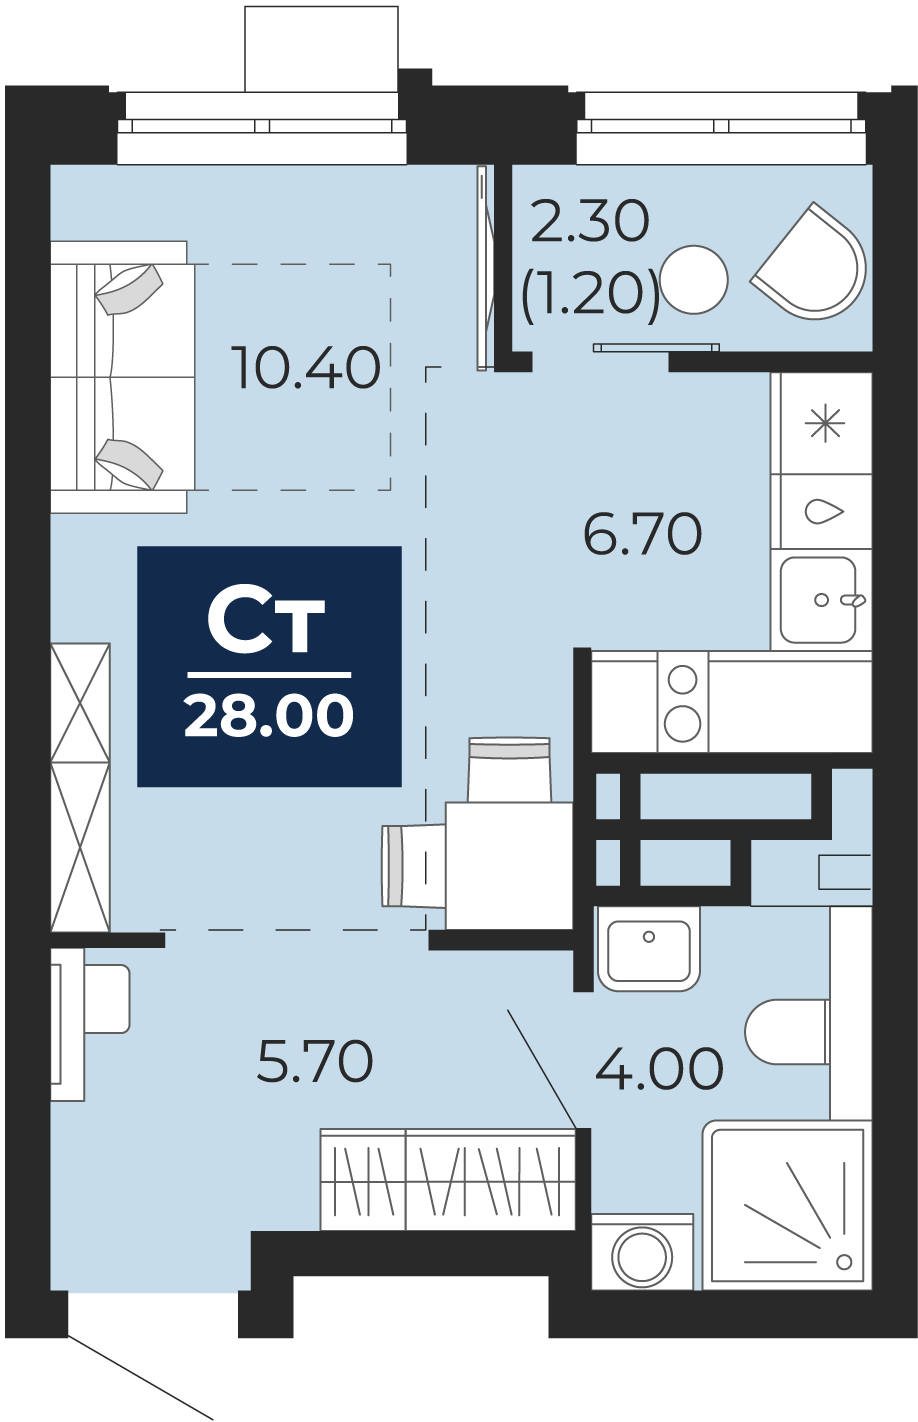 Квартира № 114, Студия, 28 кв. м, 4 этаж